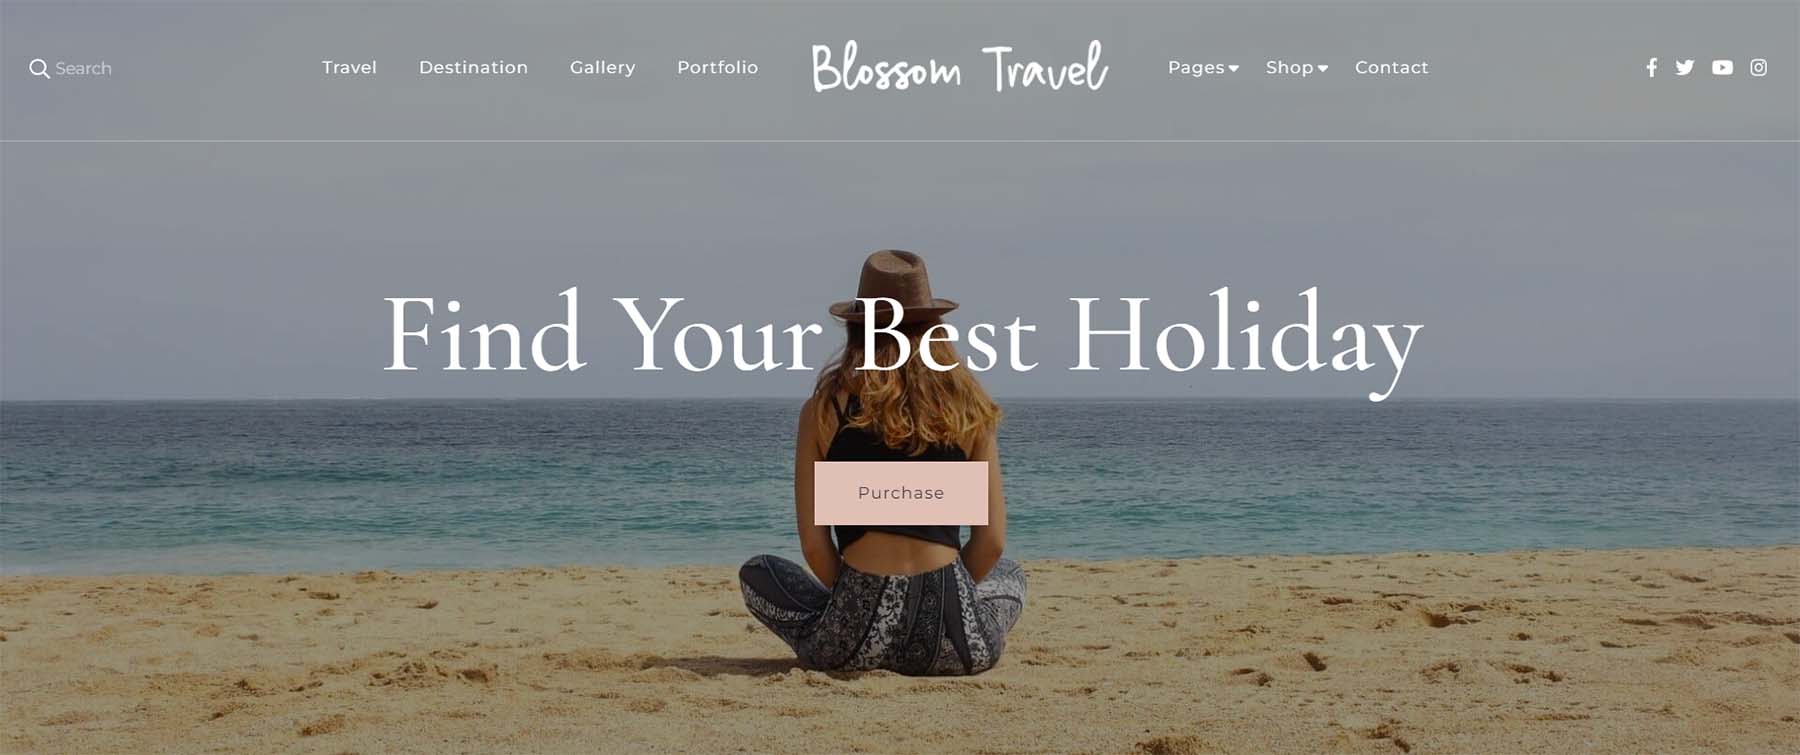 ธีม WordPress ของ Blossom Travel